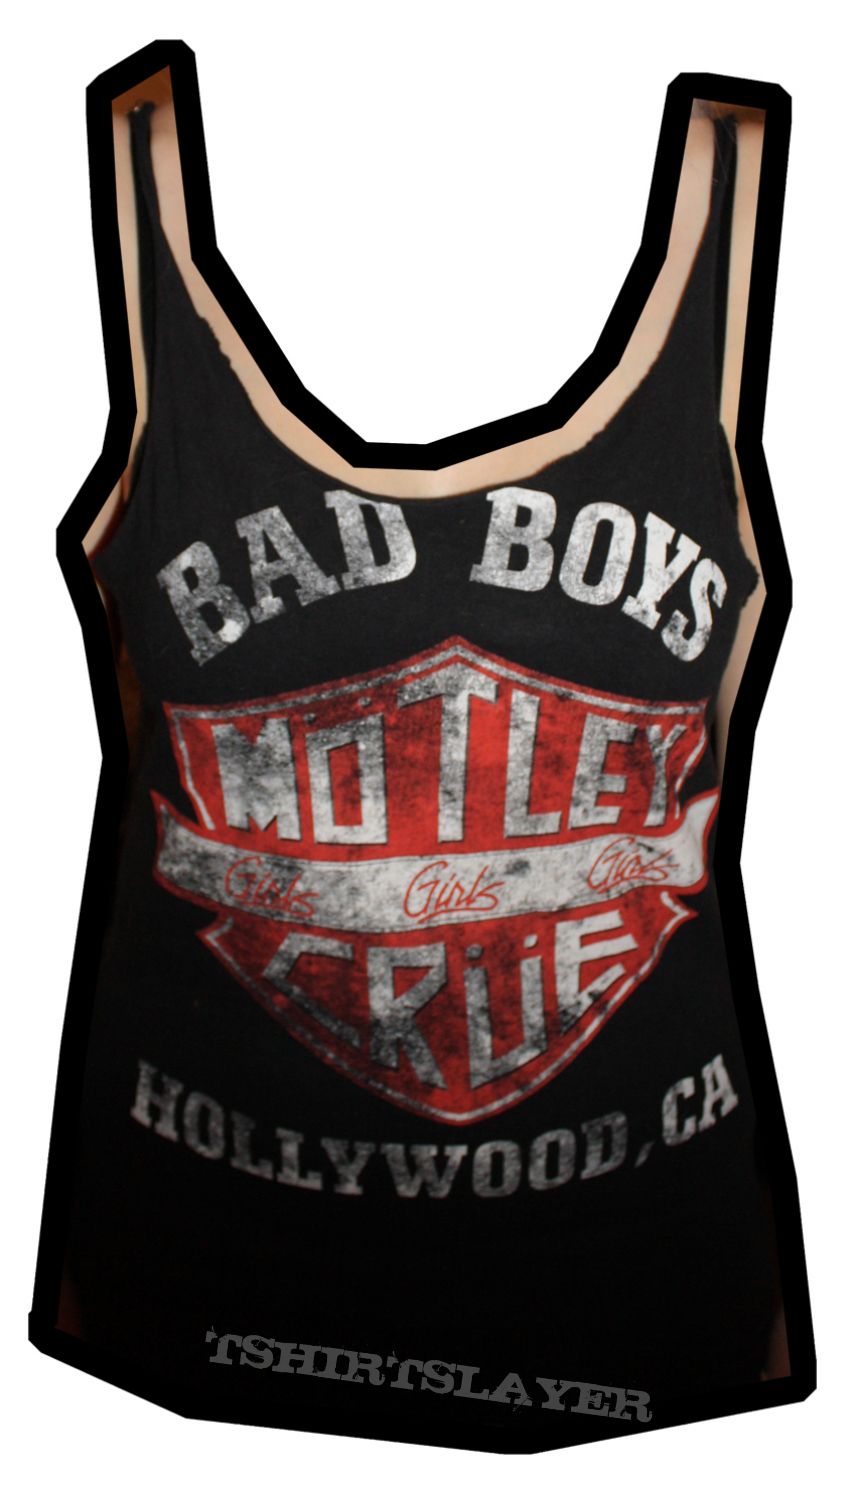 Mötley Crüe Bad Boys Hollywood, CA Shirt